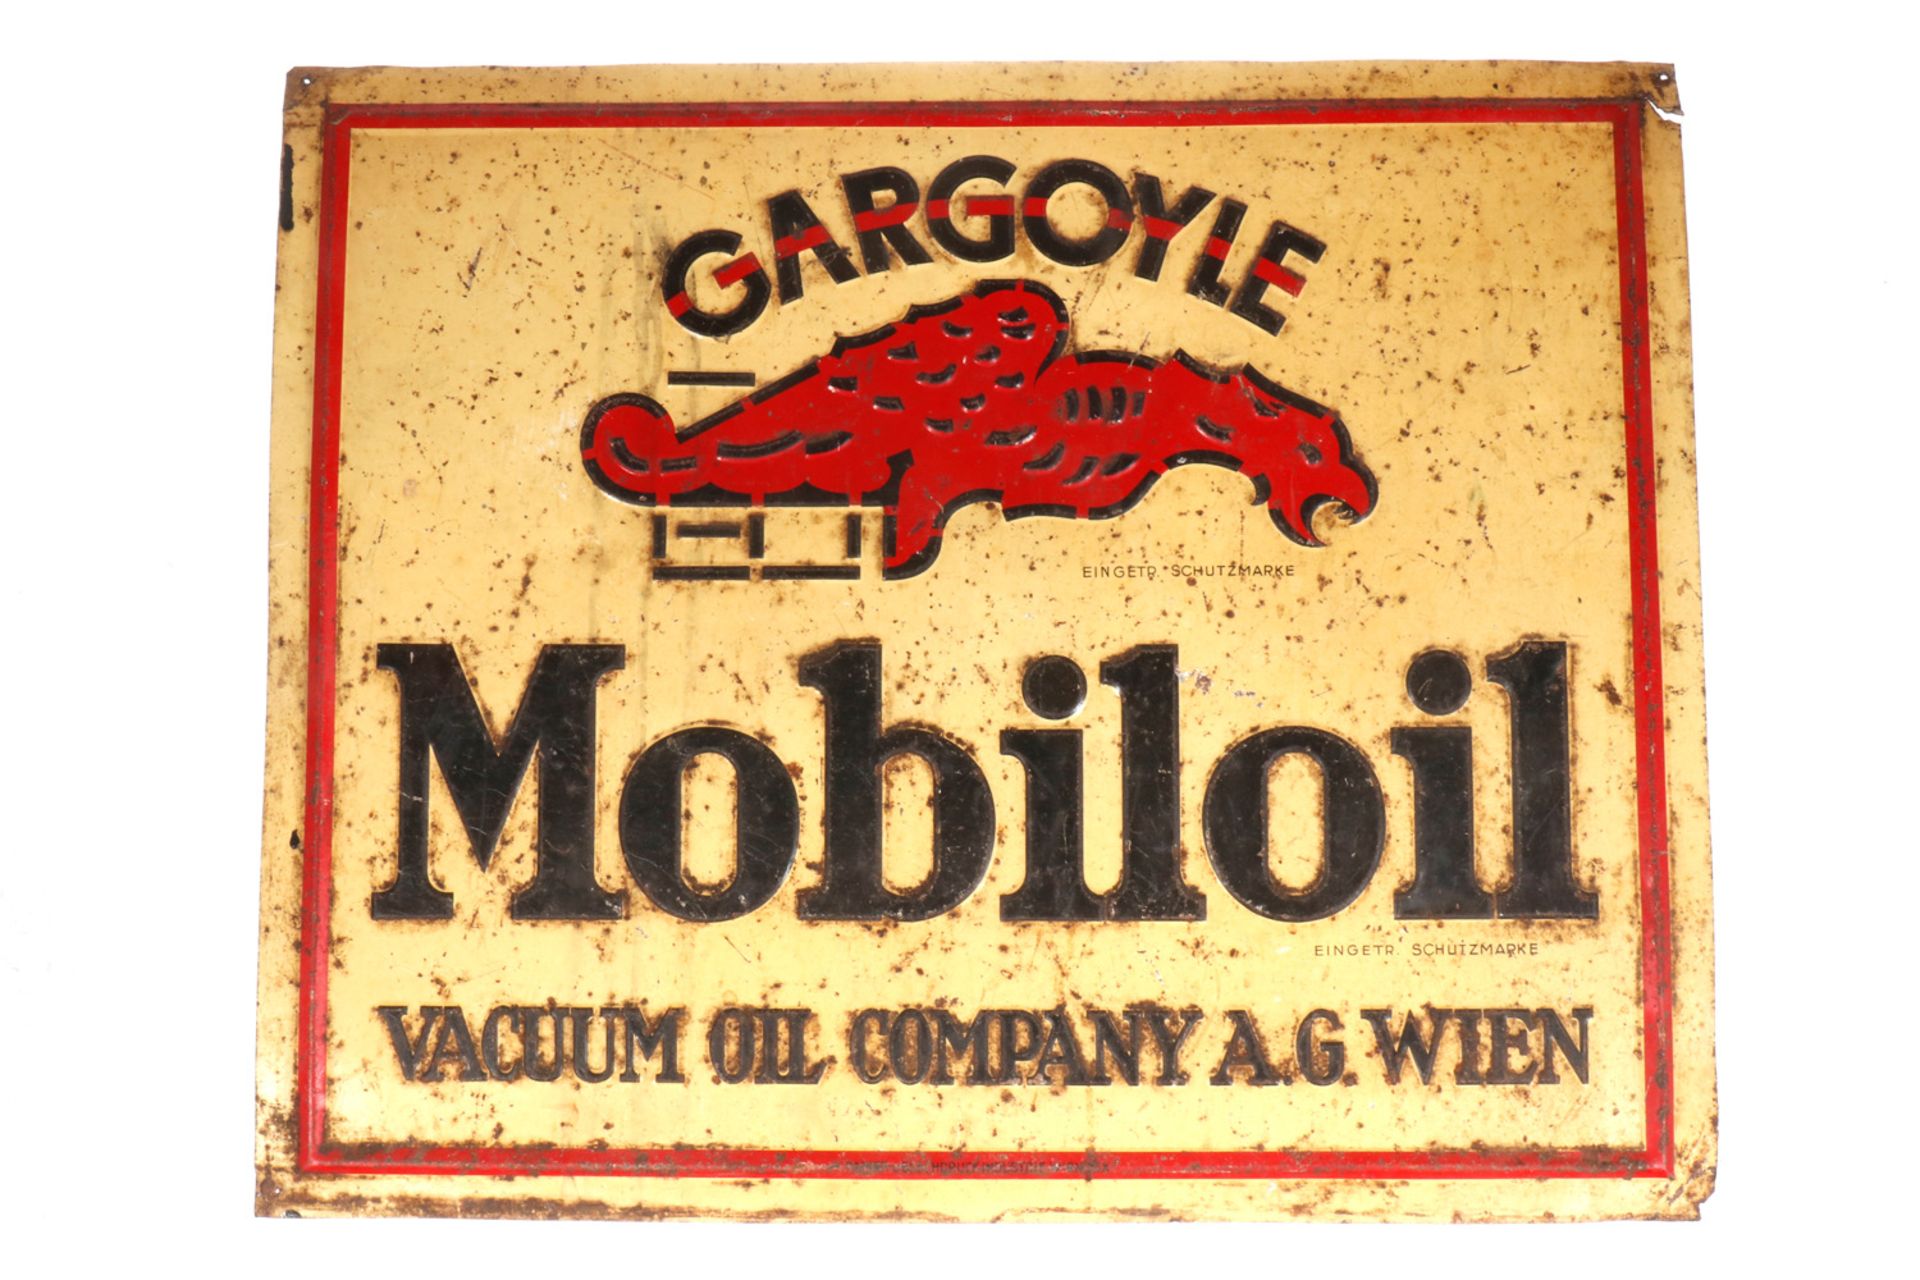 Blechschild "Gargoyle Mobiloil", geprägt, Papier- und Blechdruckindustrie Wien, Rostpunkte, 55 x